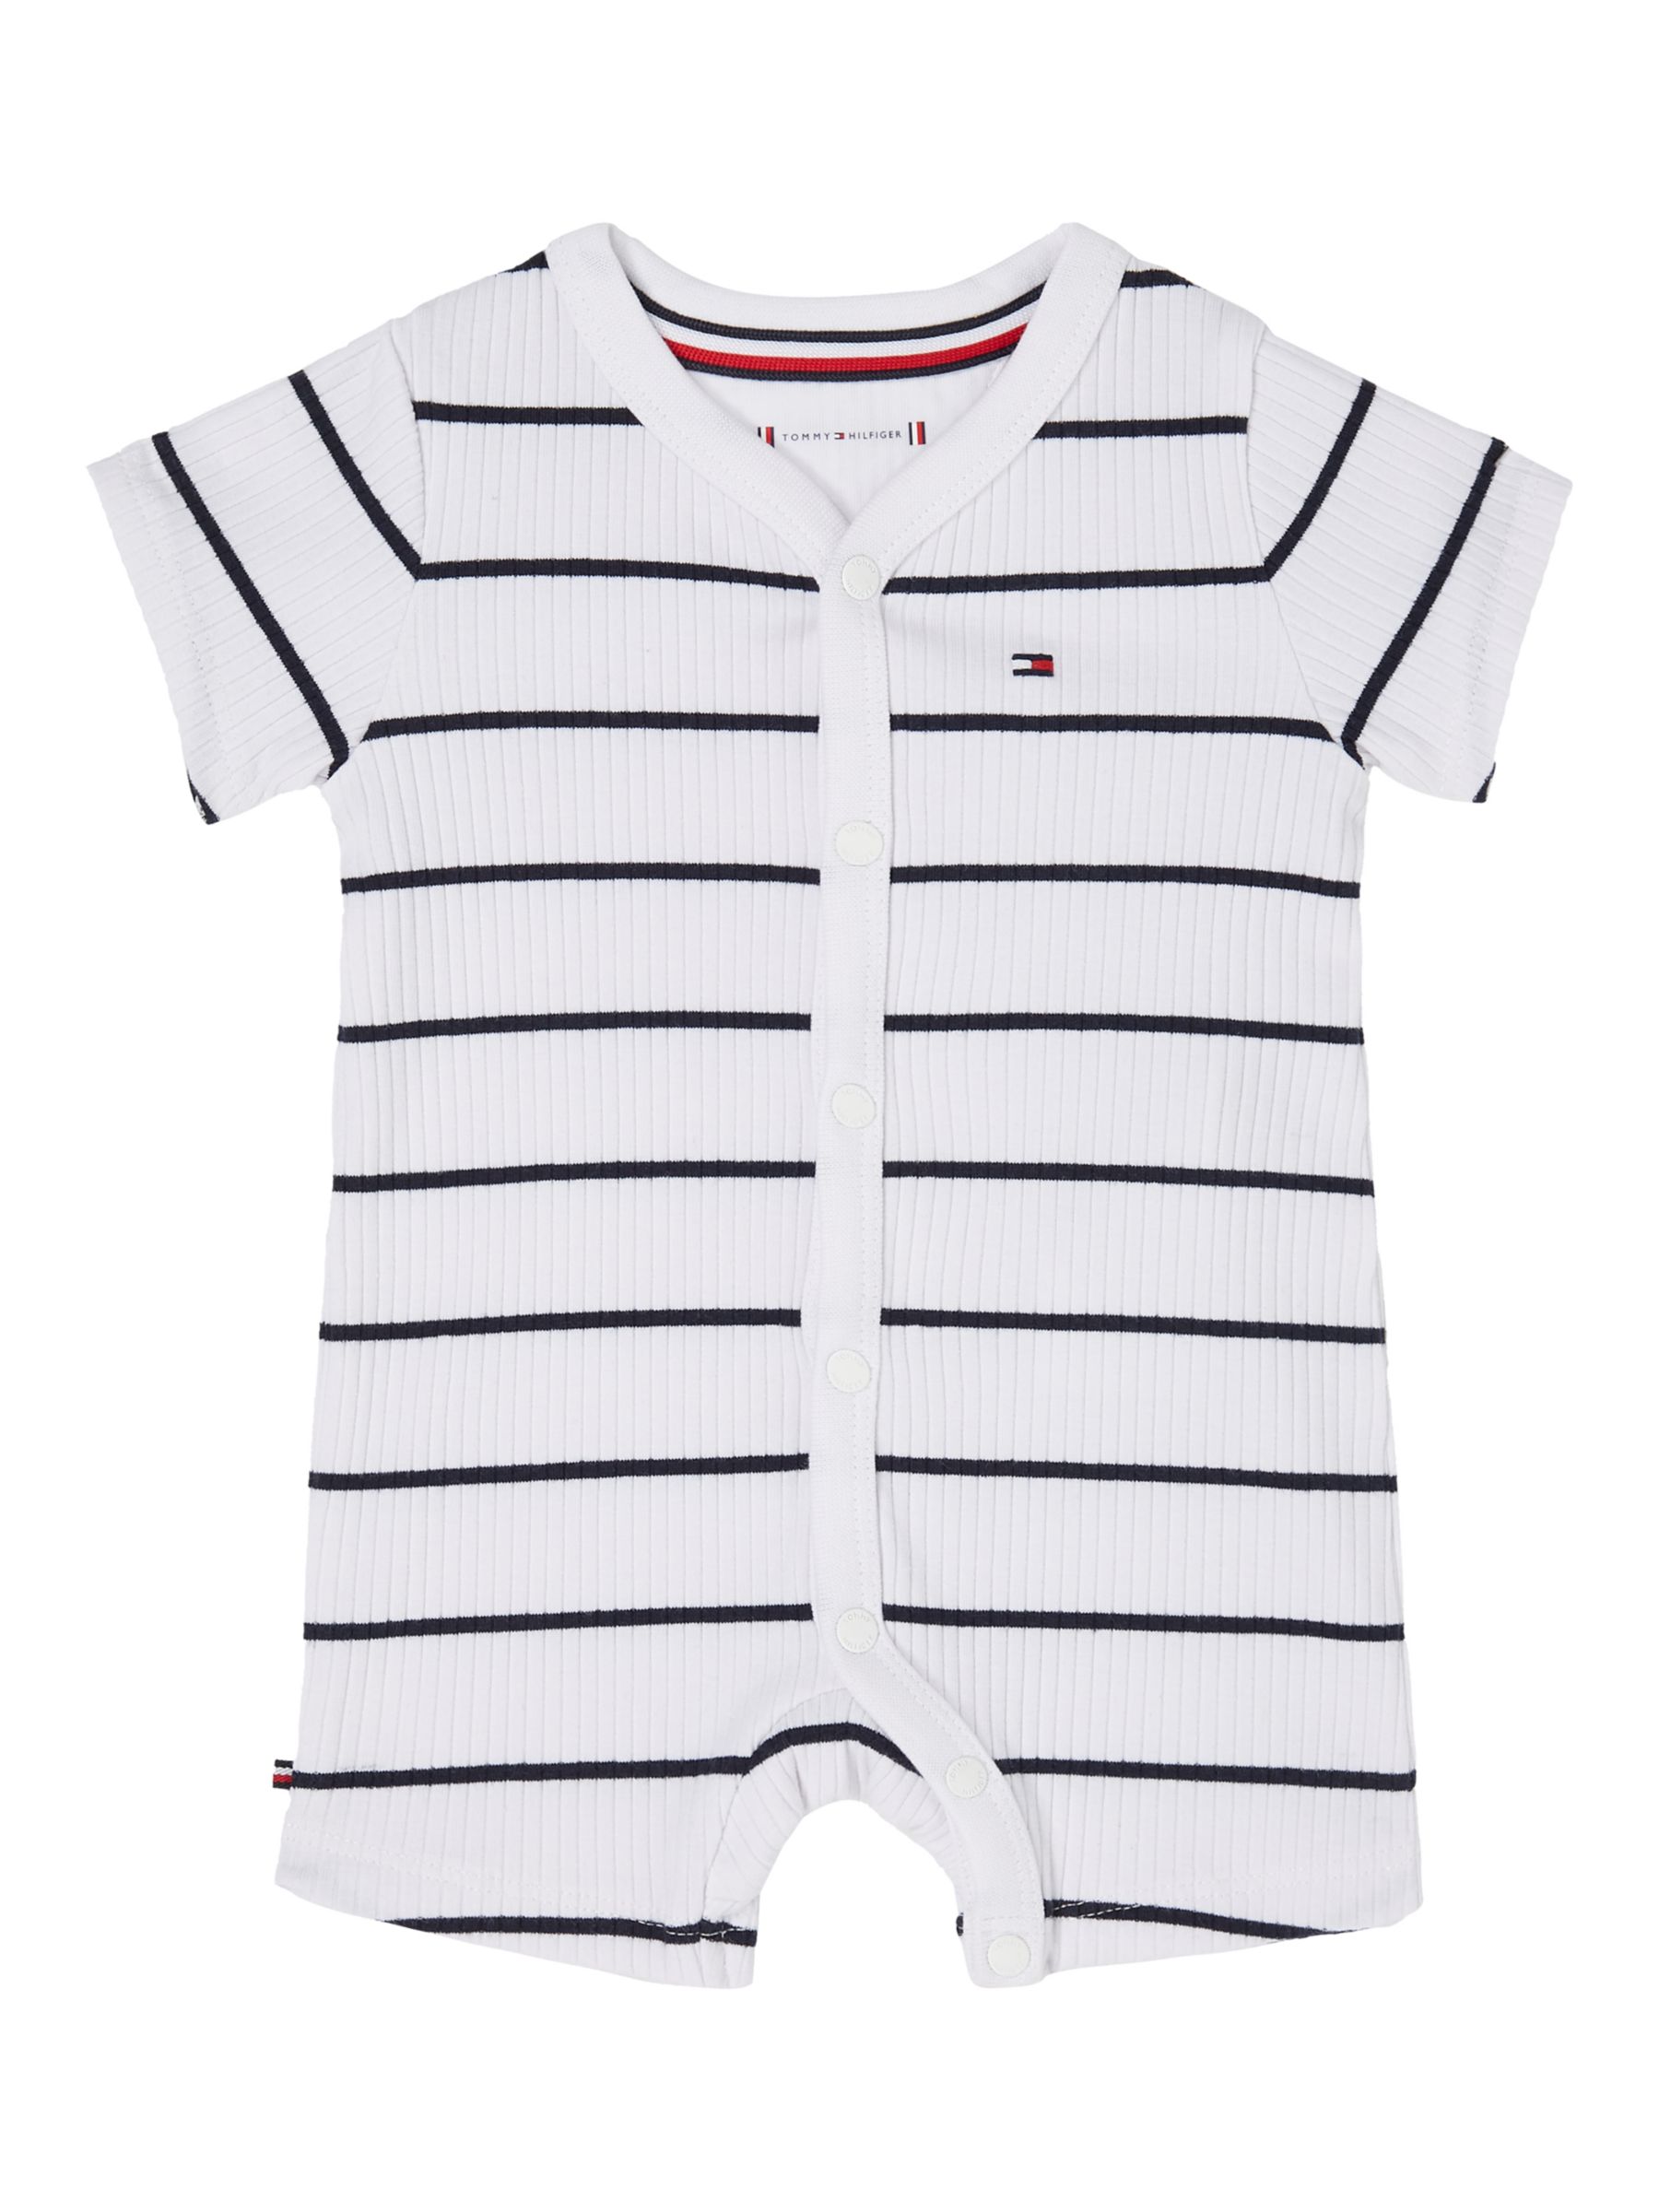 Tommy Hilfiger Baby Flag Logo Stripe Shortall, White/Desert Sky, 9 months